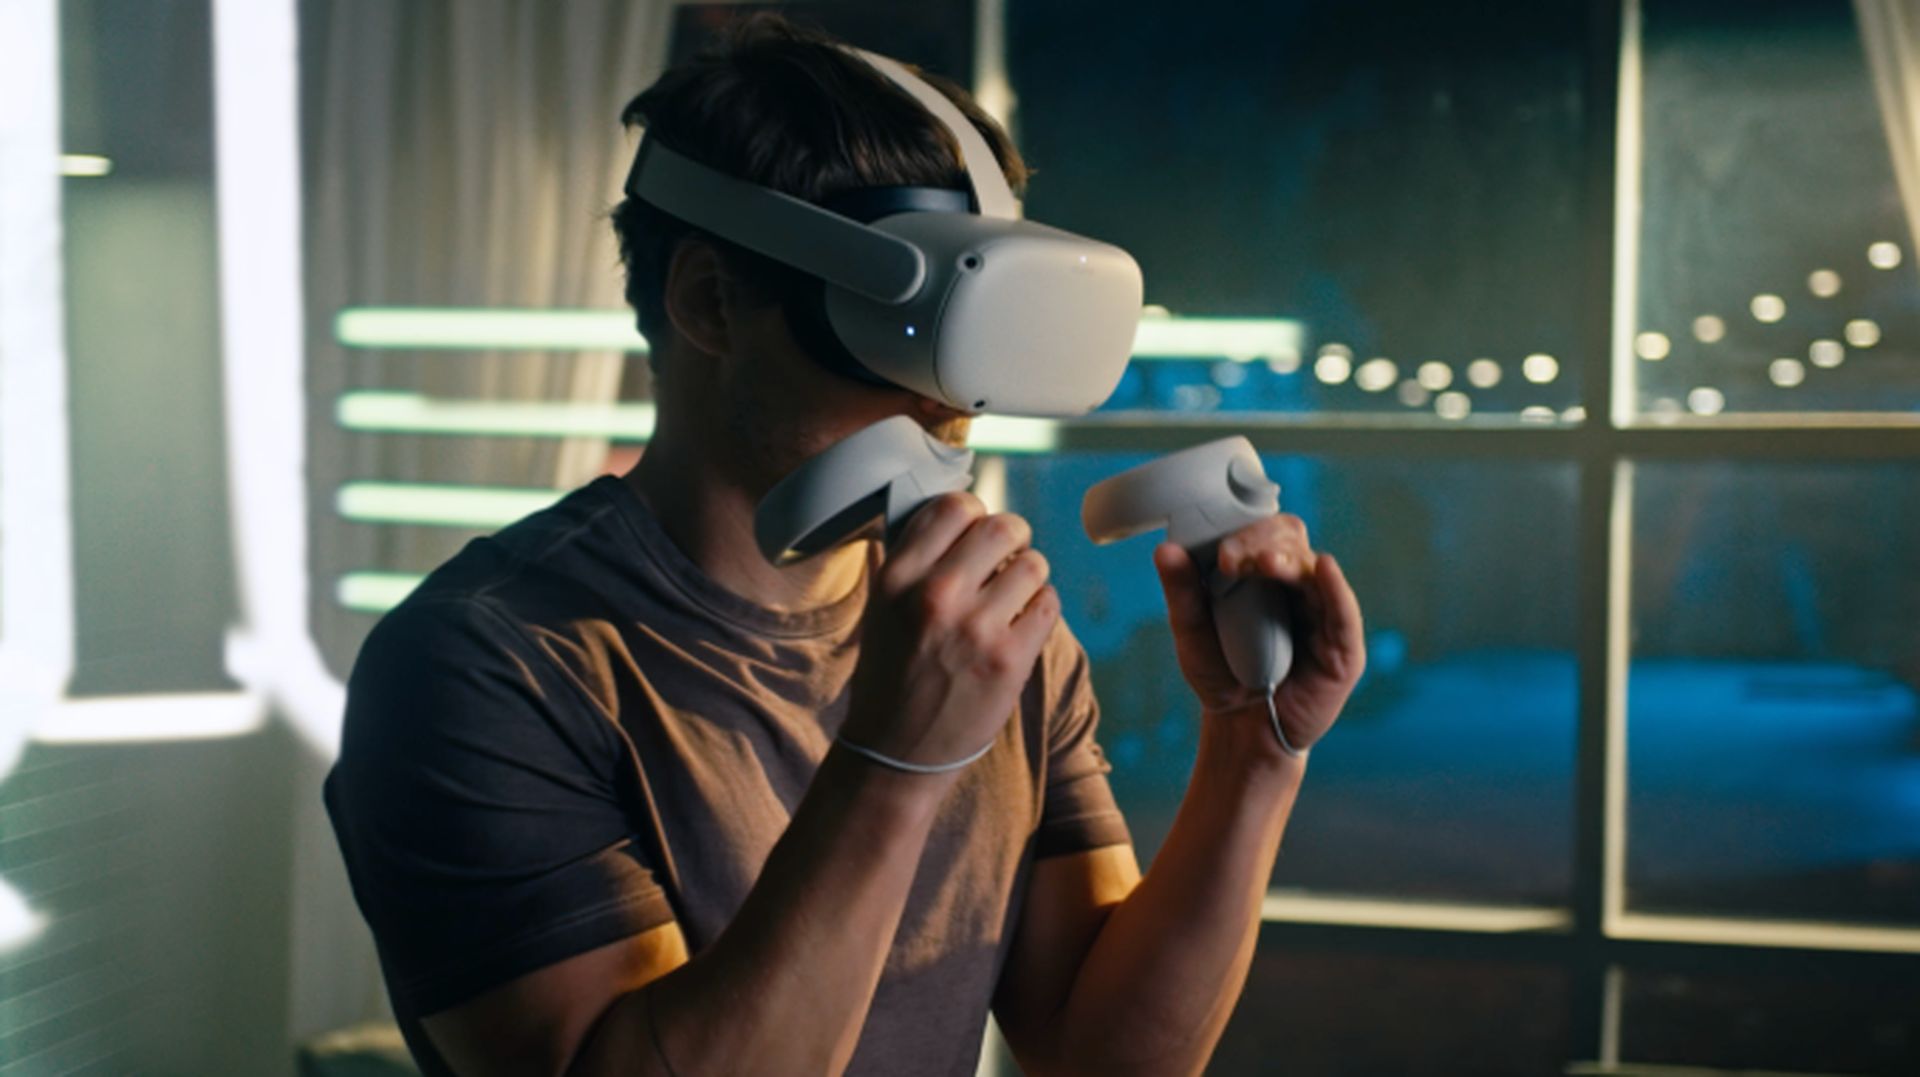 In dit artikel gaan we bespreken hoe je Oculus Quest 2 eenvoudig naar Samsung TV kunt casten, zodat je de dingen die in de headset gebeuren met anderen kunt delen.